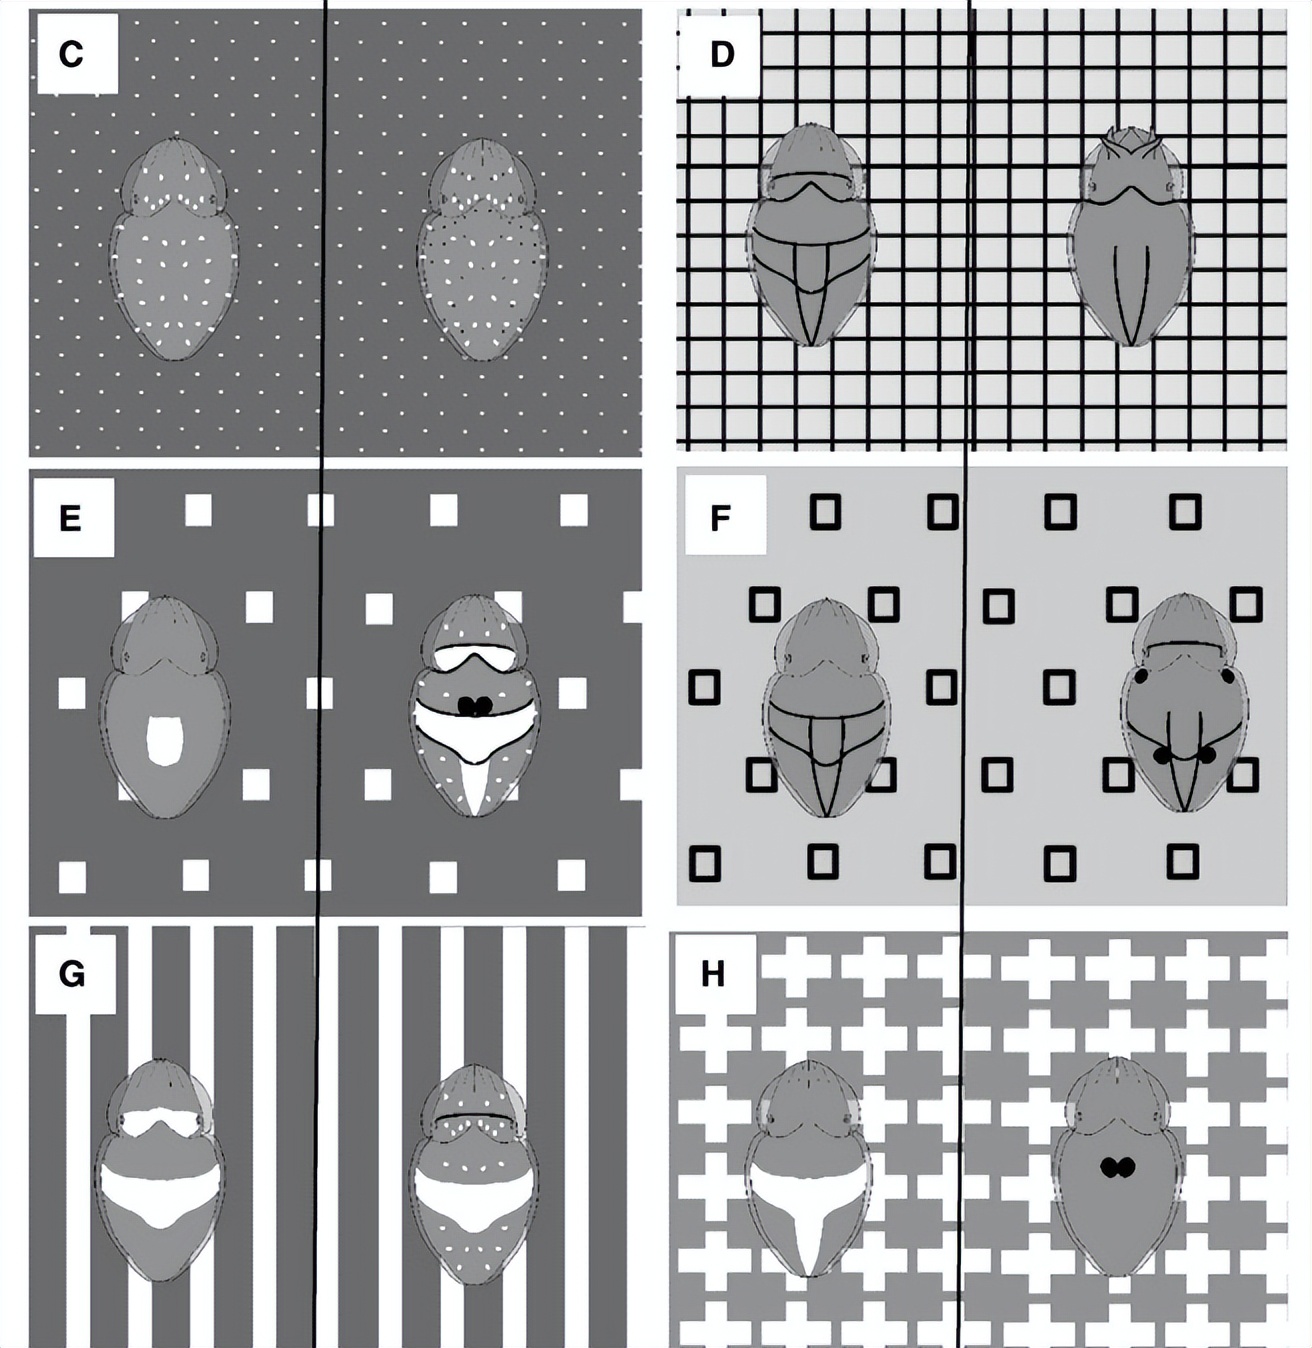 墨鱼被放置在条纹和正方形的背景下，以研究它们伪装的复杂机制